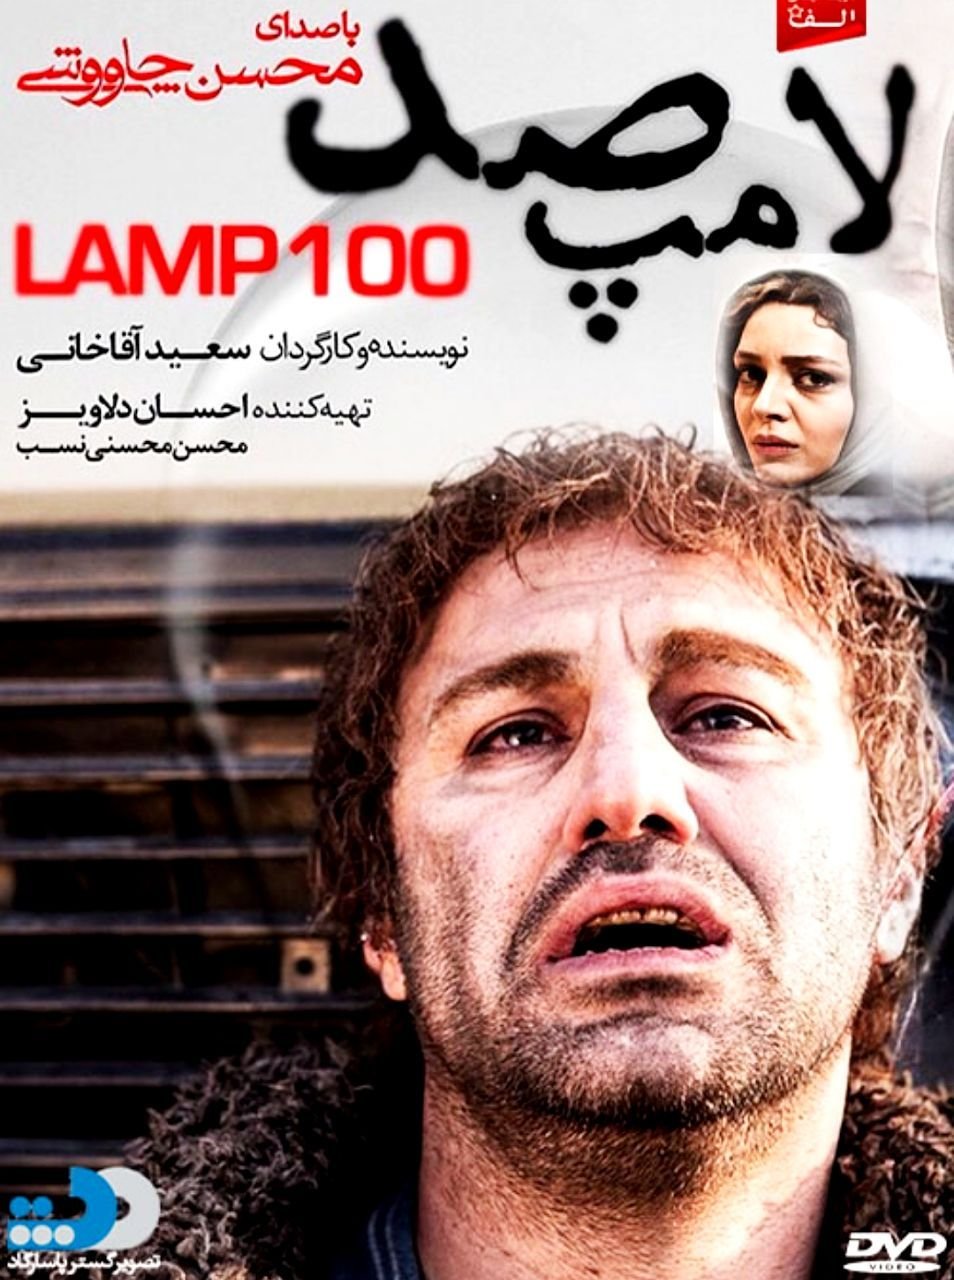 دانلود فیلم لامپ 100